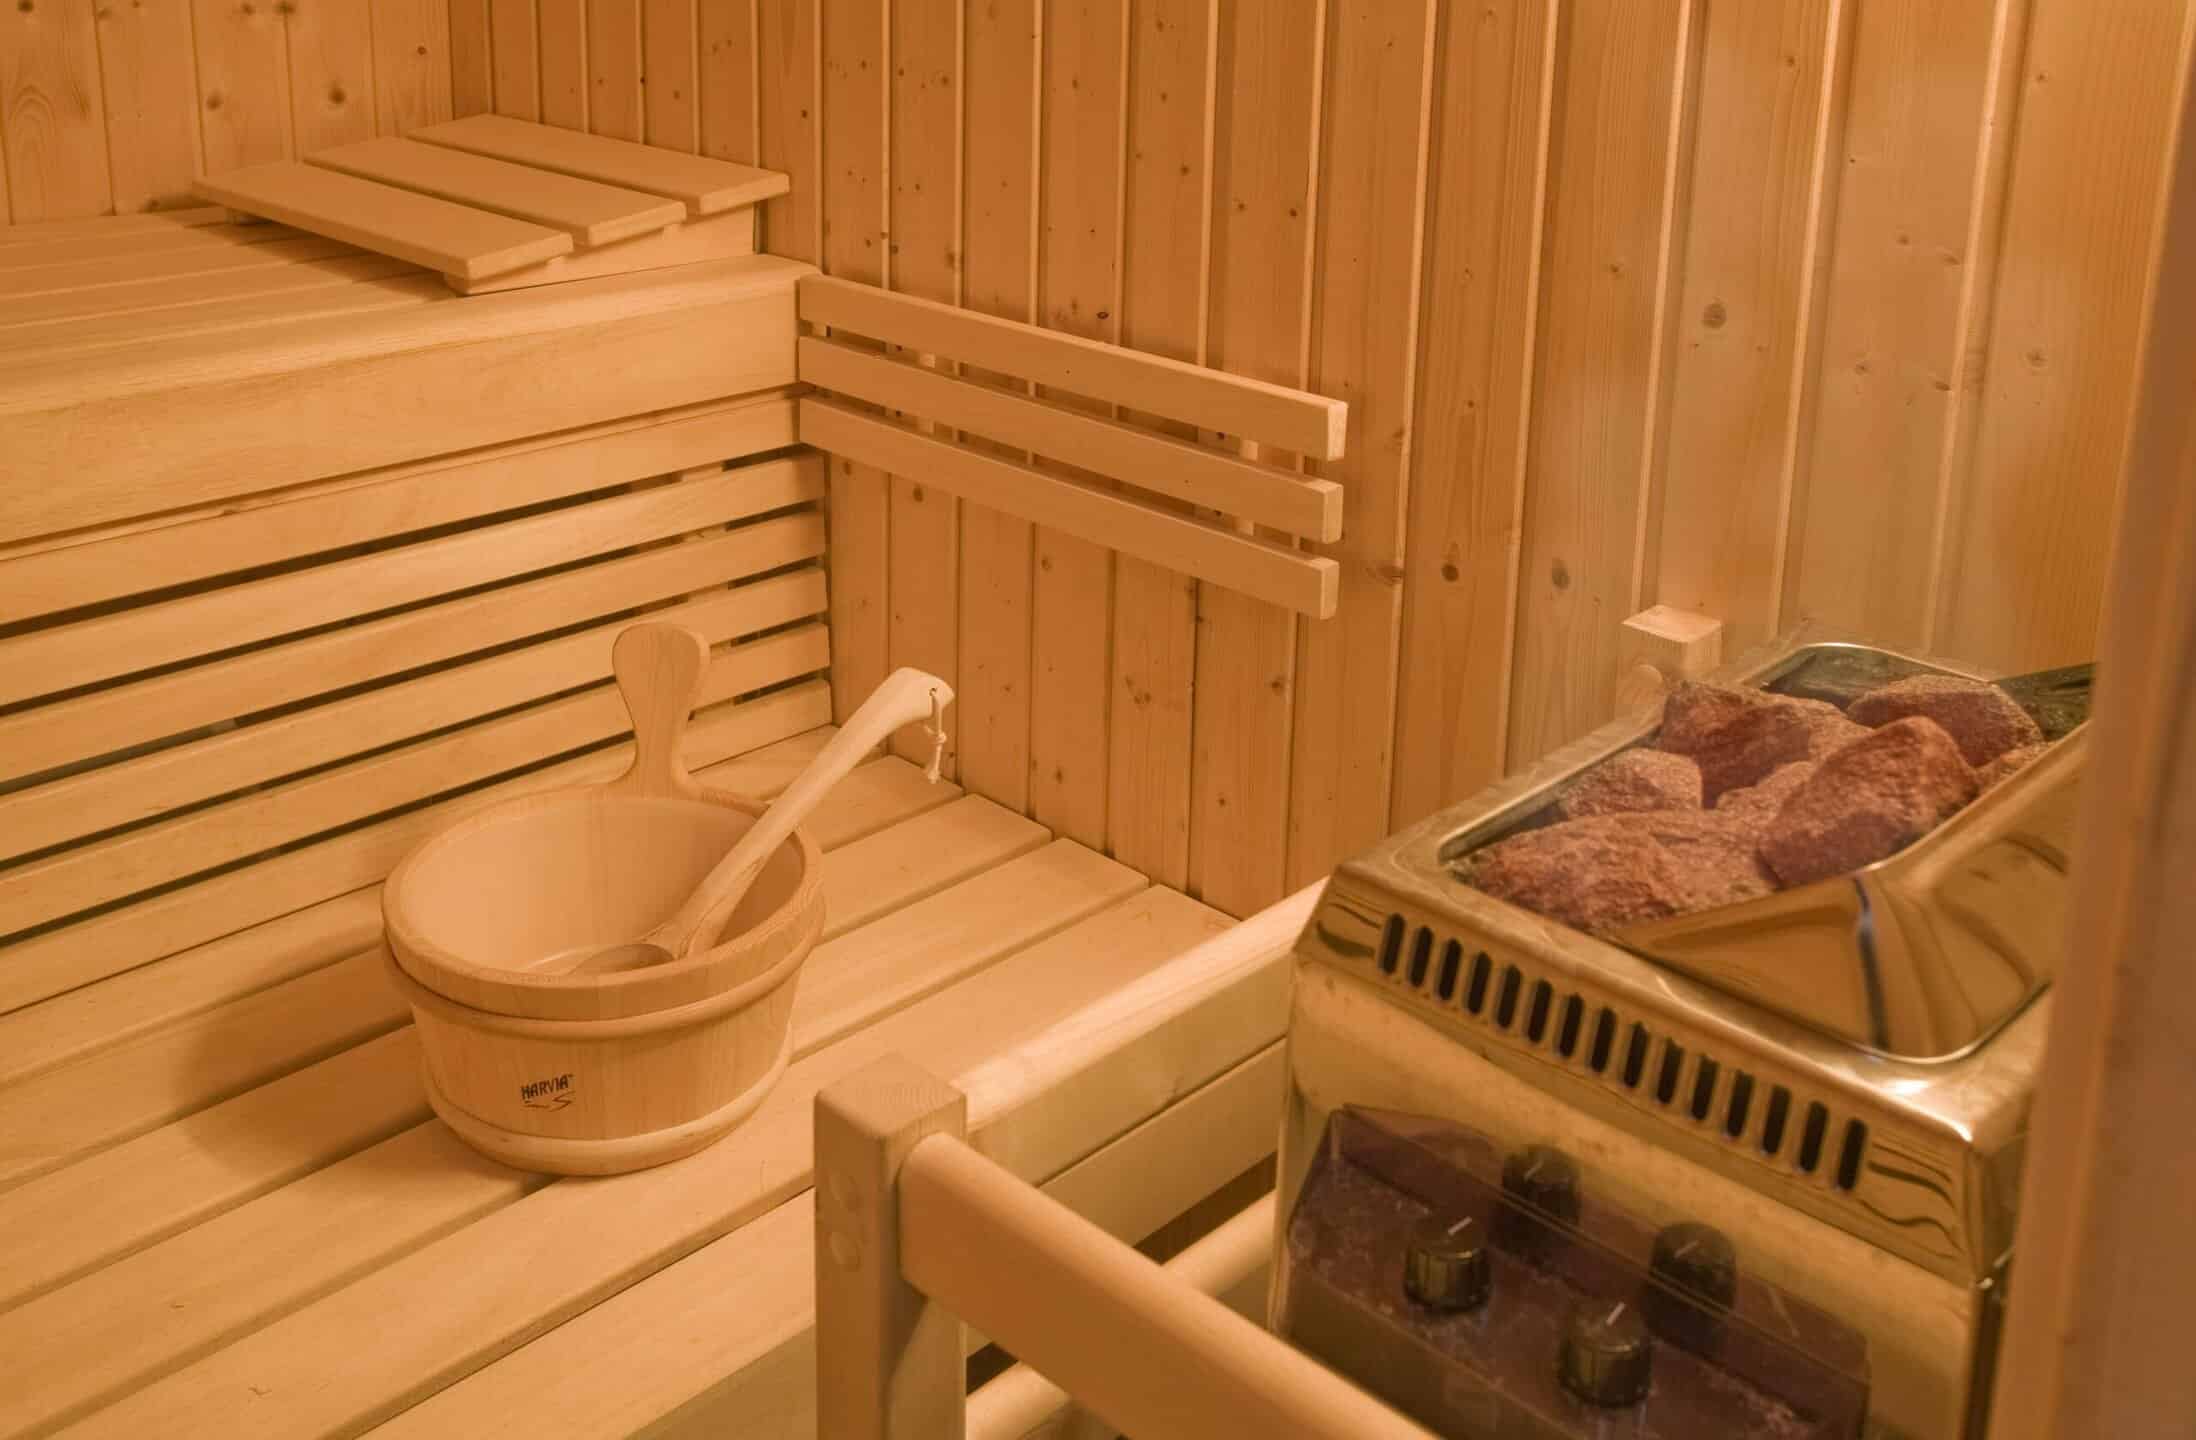 Sauna with water bucket and coals